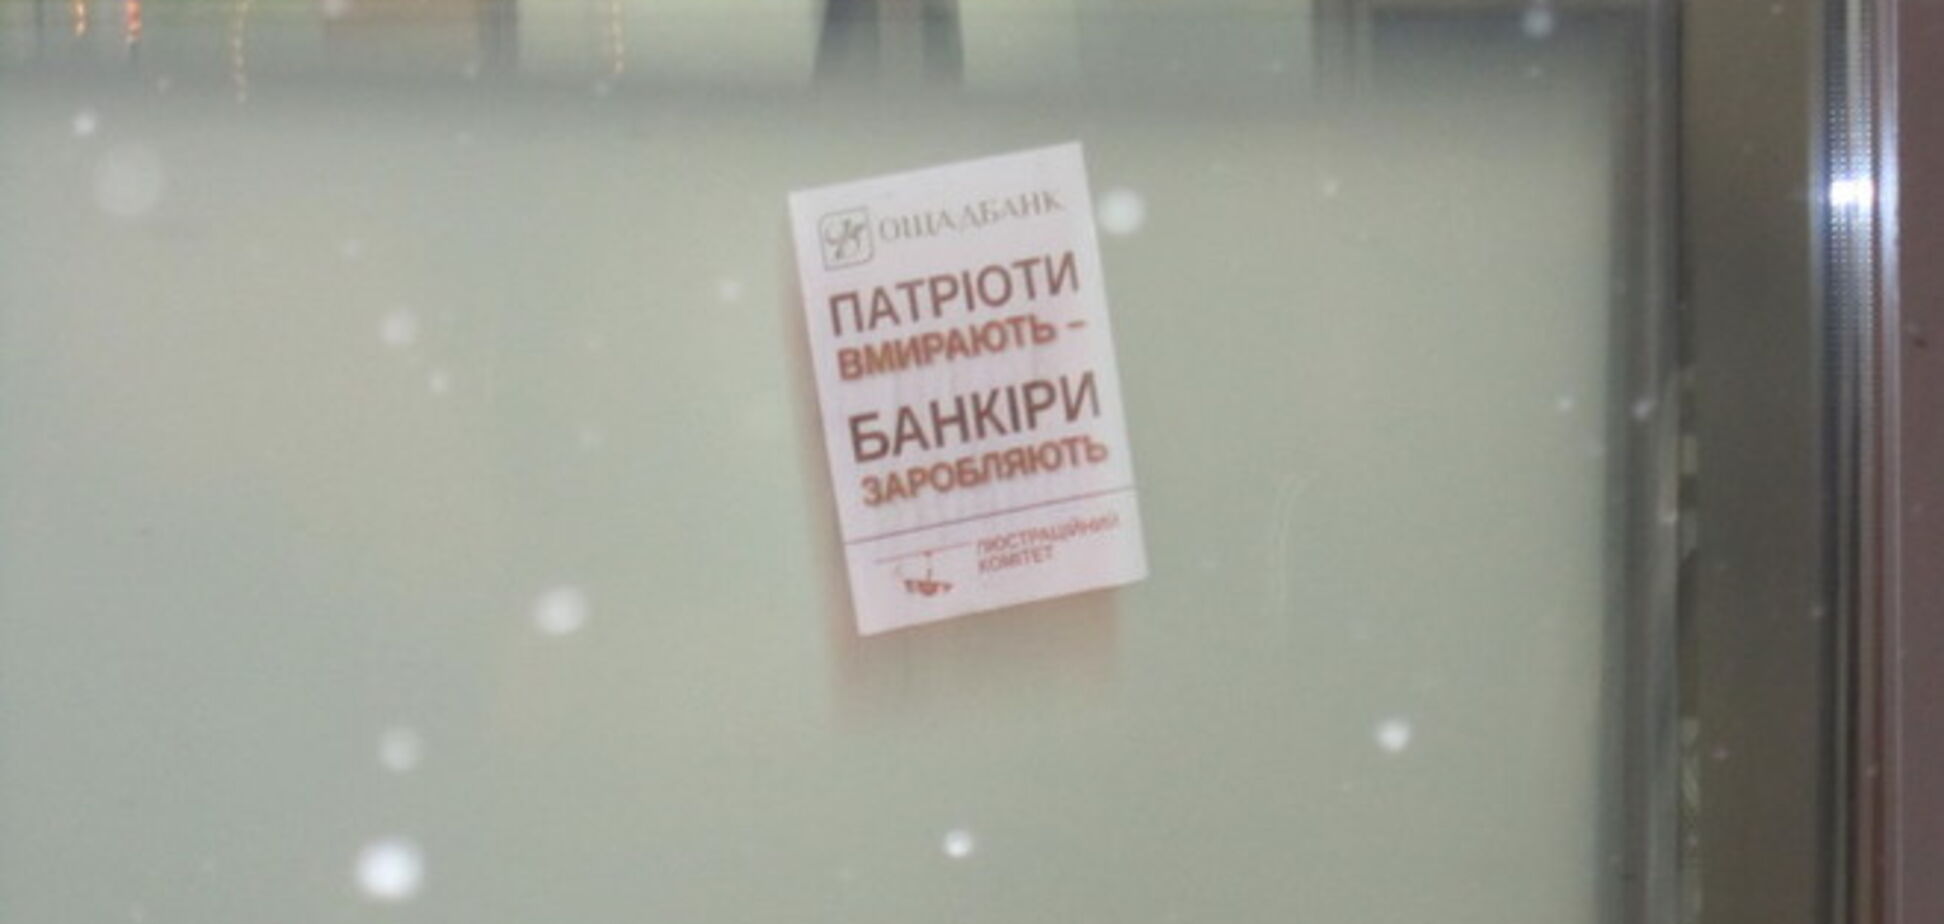 Банк друга Яценюка обклеїли листівками 'Патріоти вмирають - банкіри заробляють'